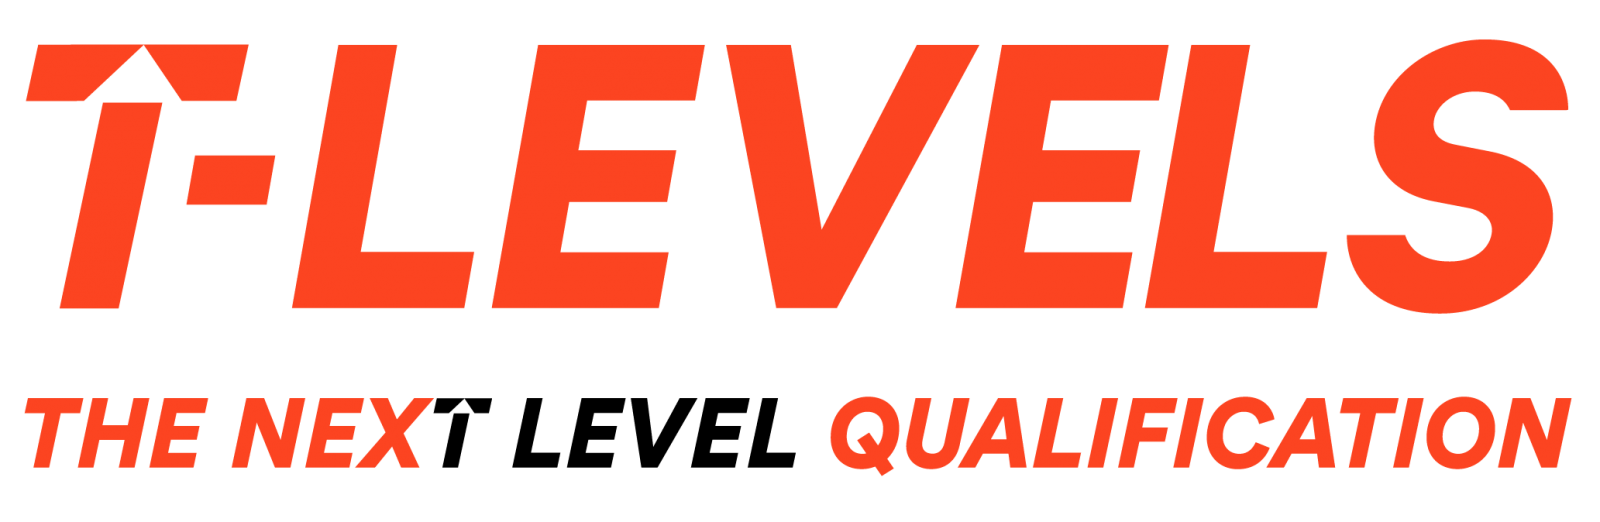 T Levels logo